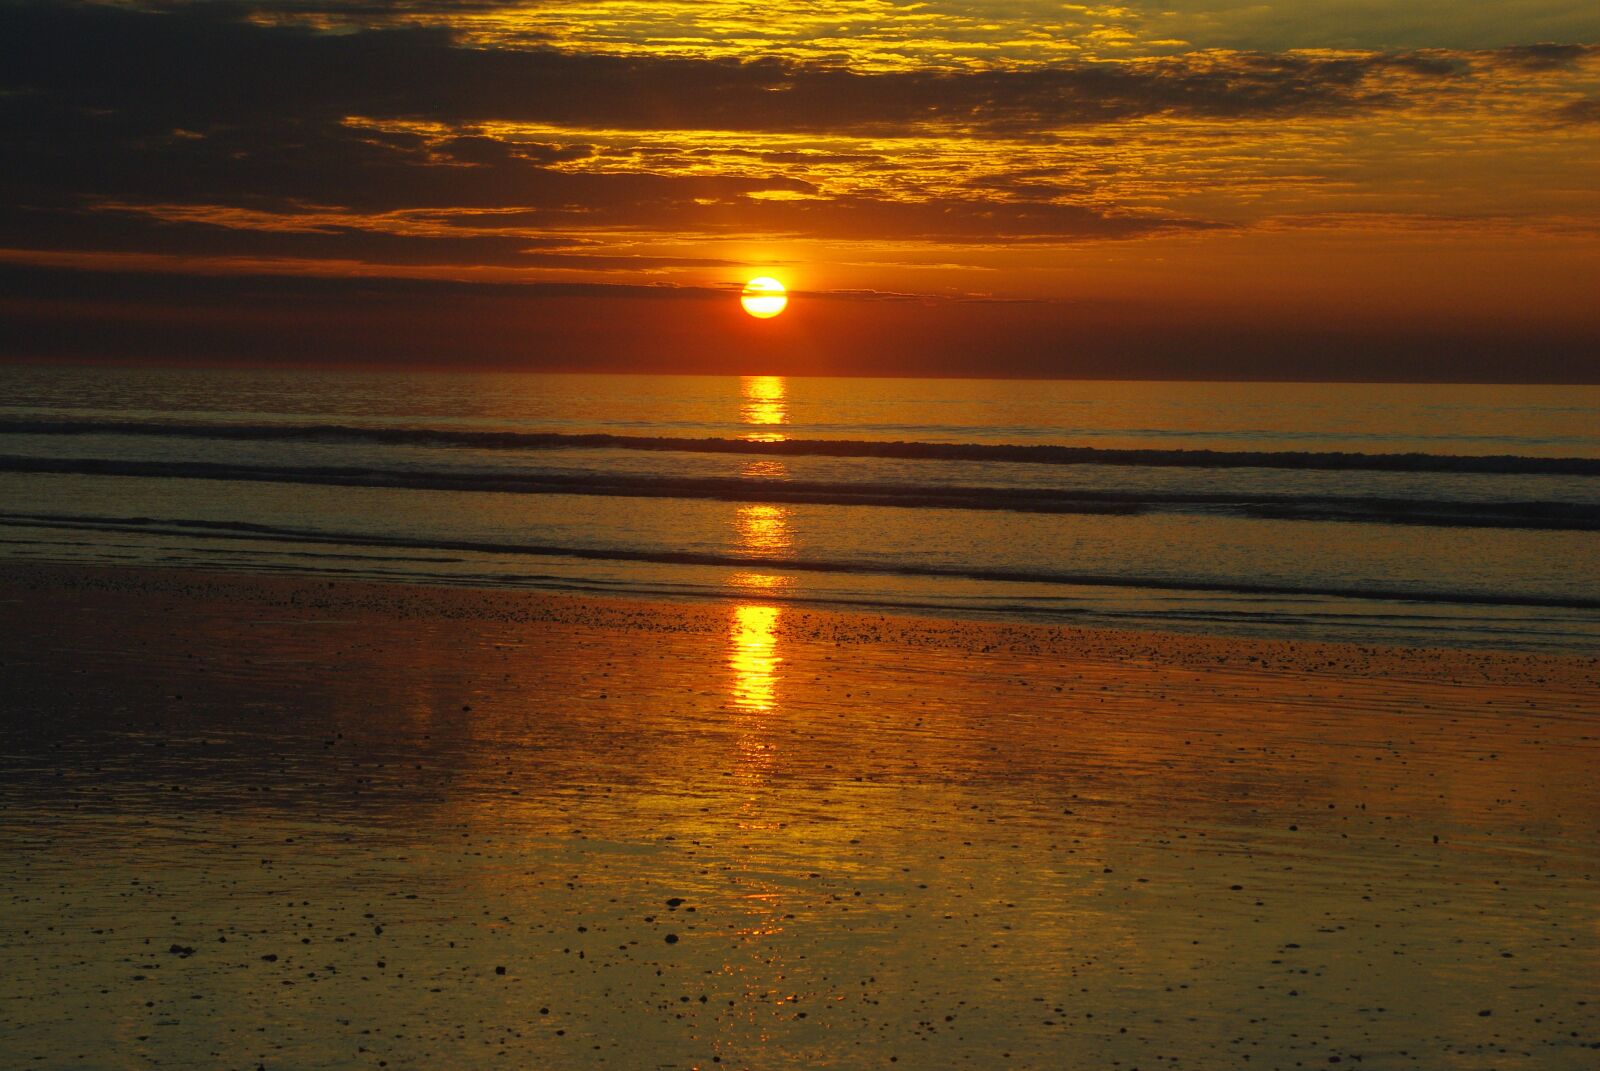 Pentax K200D sample photo. Sunset, ocean, beach photography